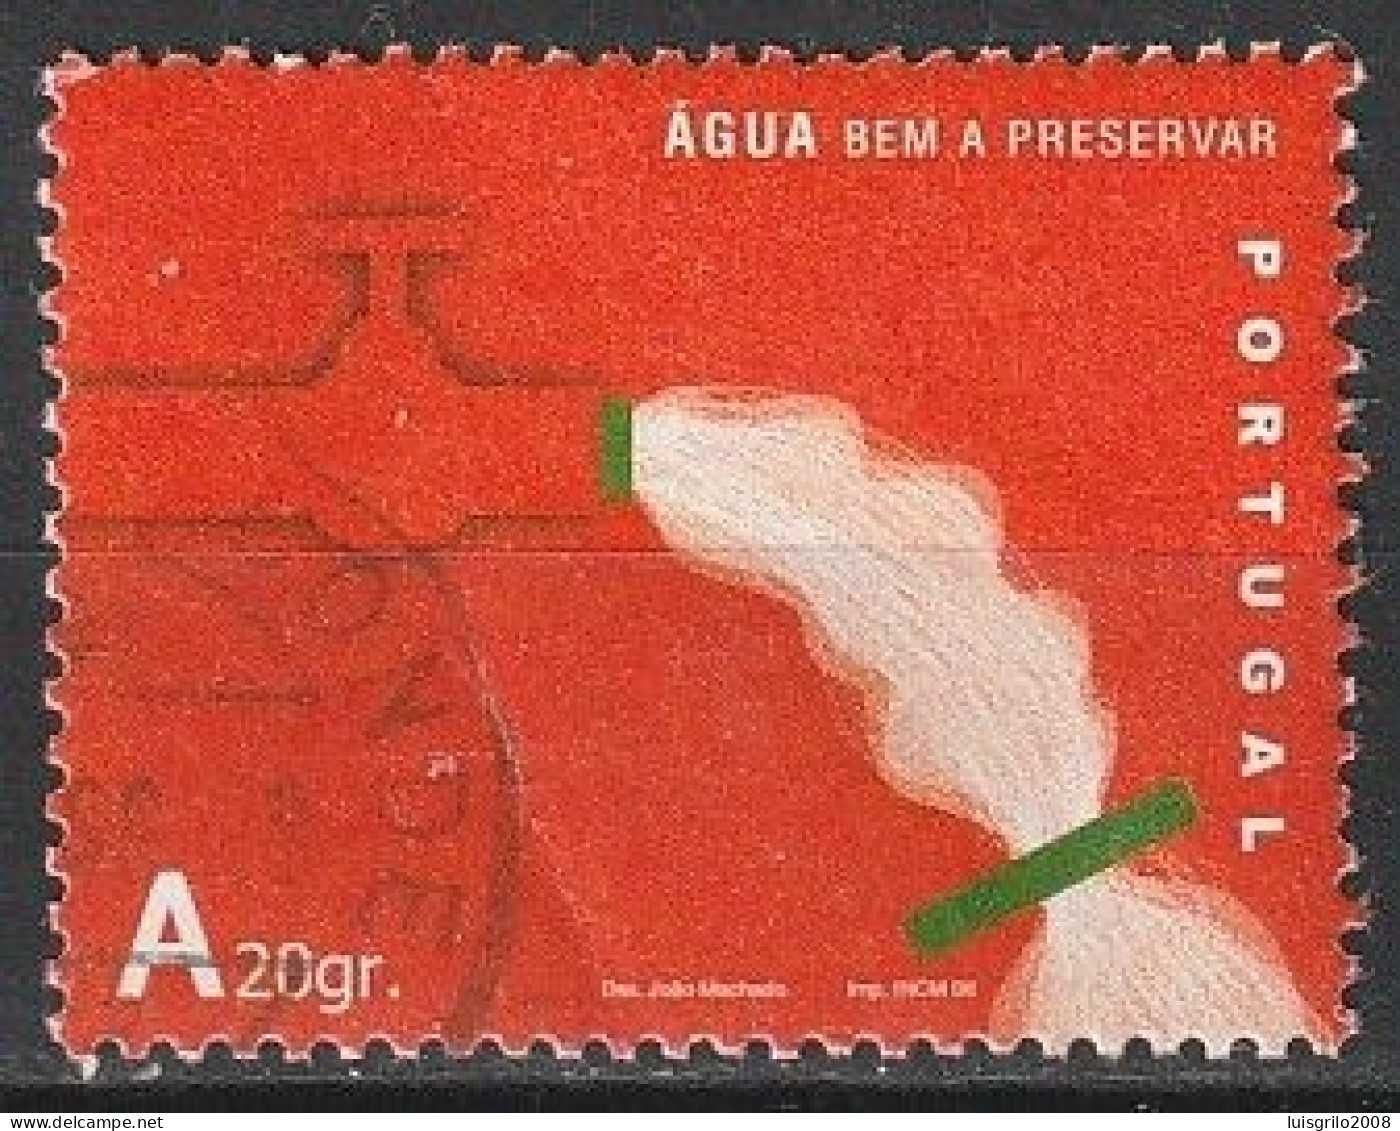 Portugal, 2006 - Água, A20gr -|- Mundifil - 3387 - Usati